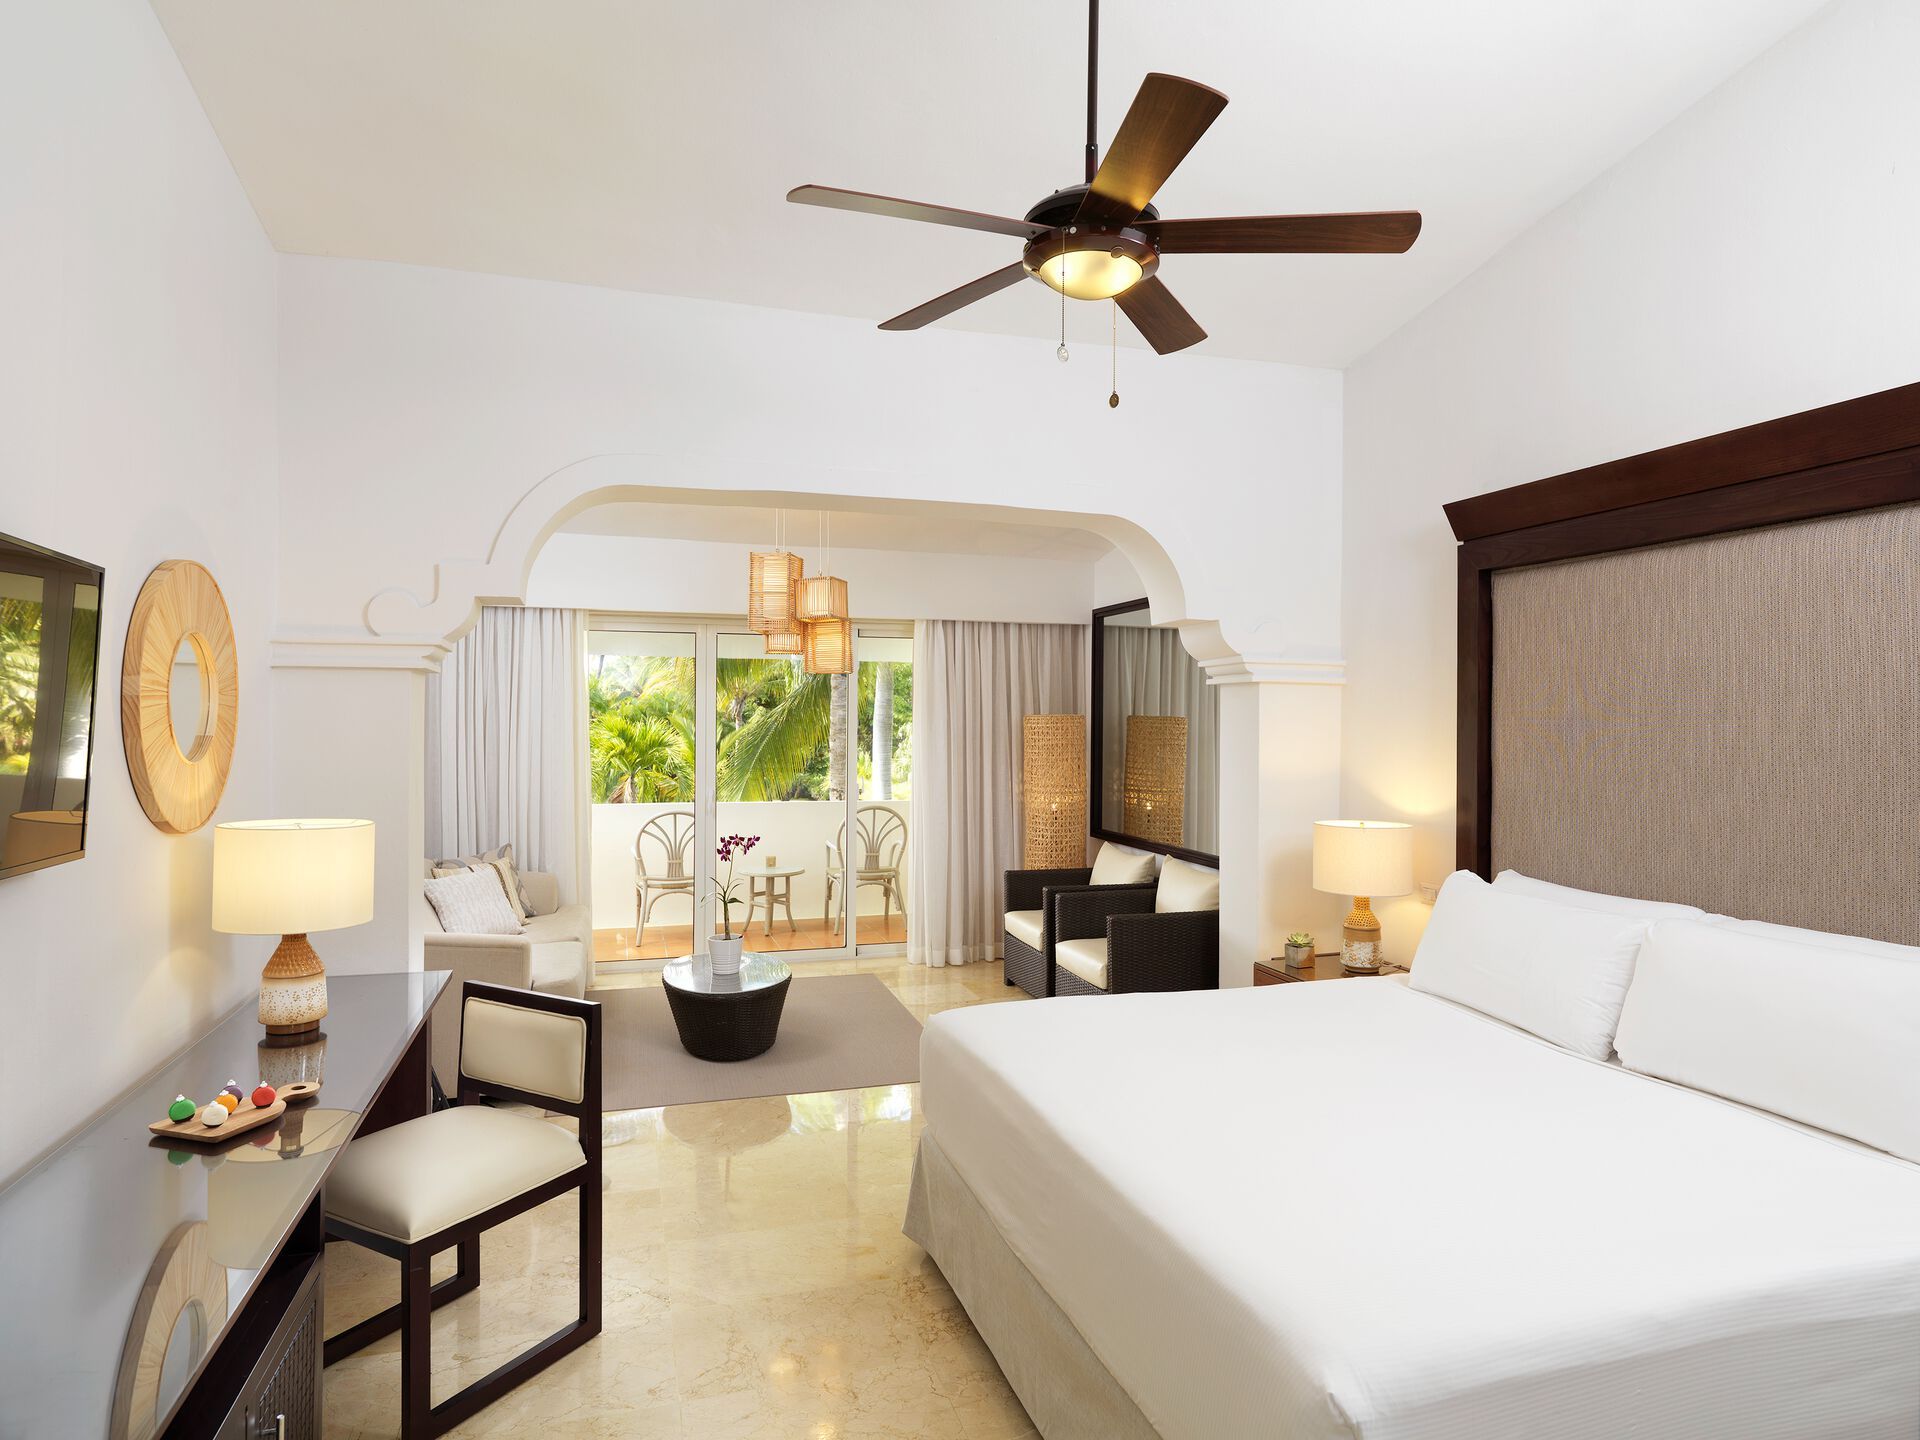 République Dominicaine - Hôtel Melia Caribe Beach Resort 5*